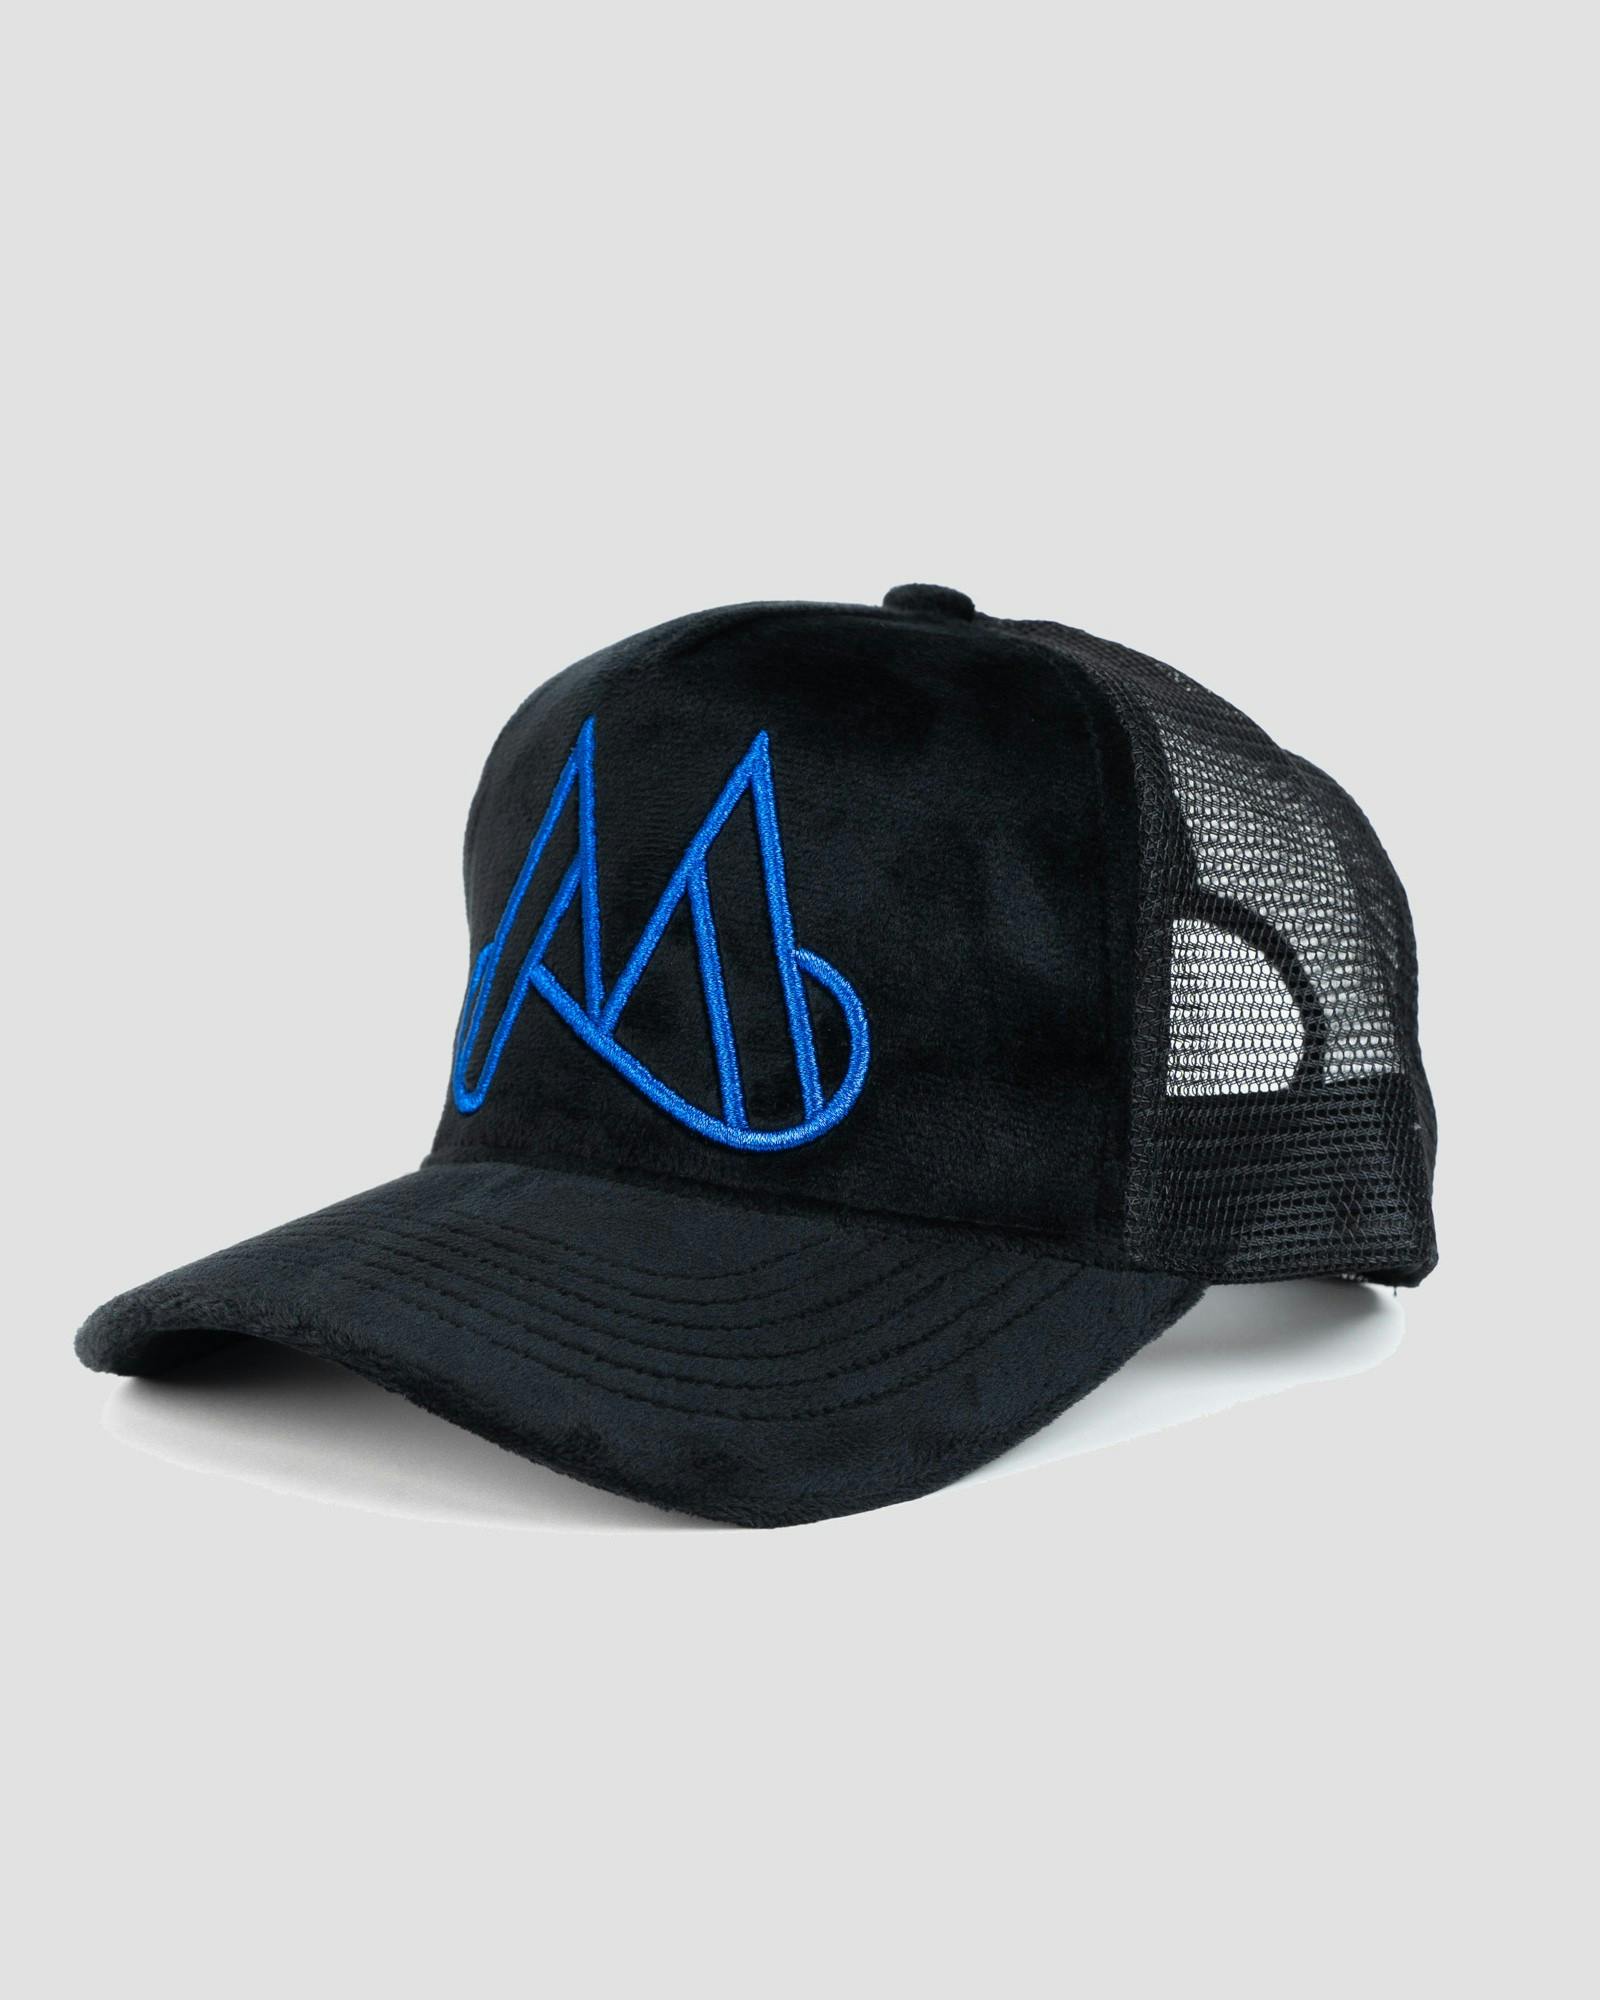 MAGGIORE Unlimited M Logo Black Cap